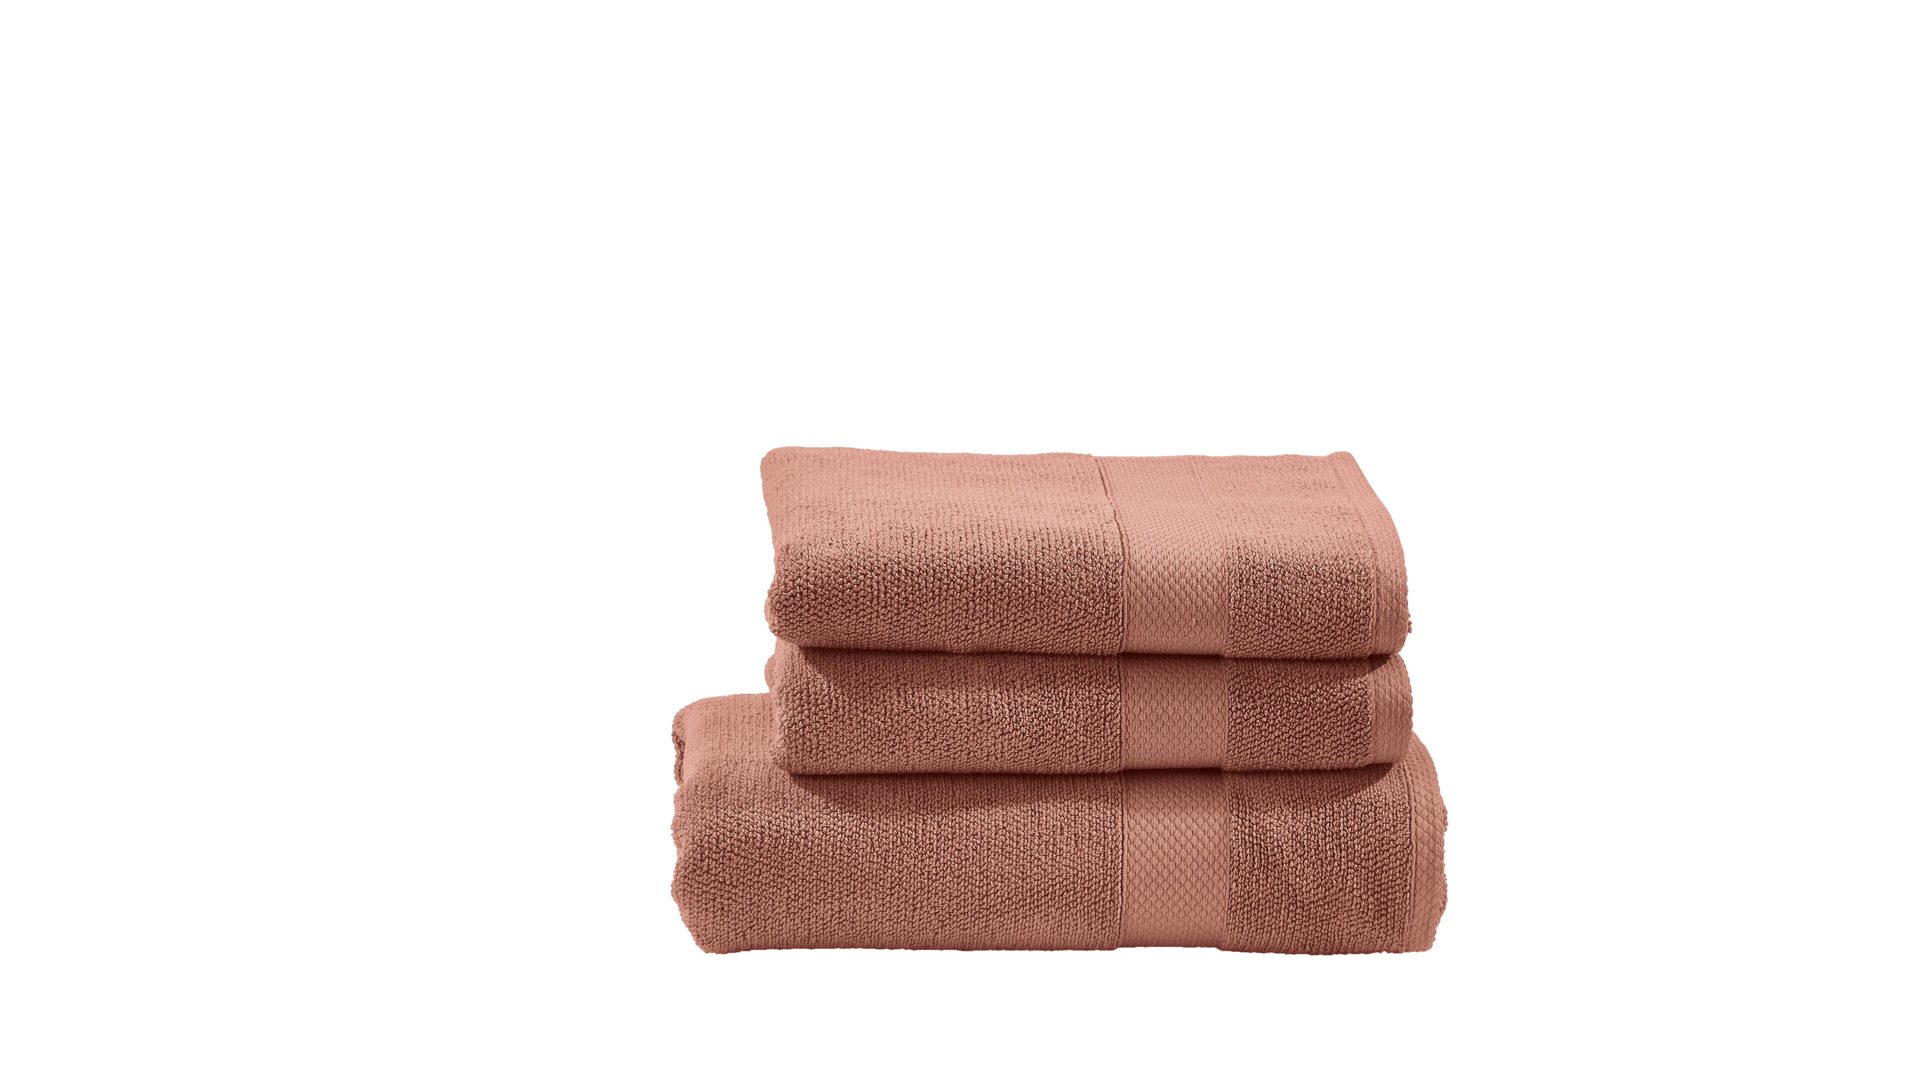 Handtuch-Set Done® be different aus Stoff in Orange DONE® Handtuch-Set Deluxe - Heimtextilien wüstensandfarbene Baumwolle  – dreiteilig